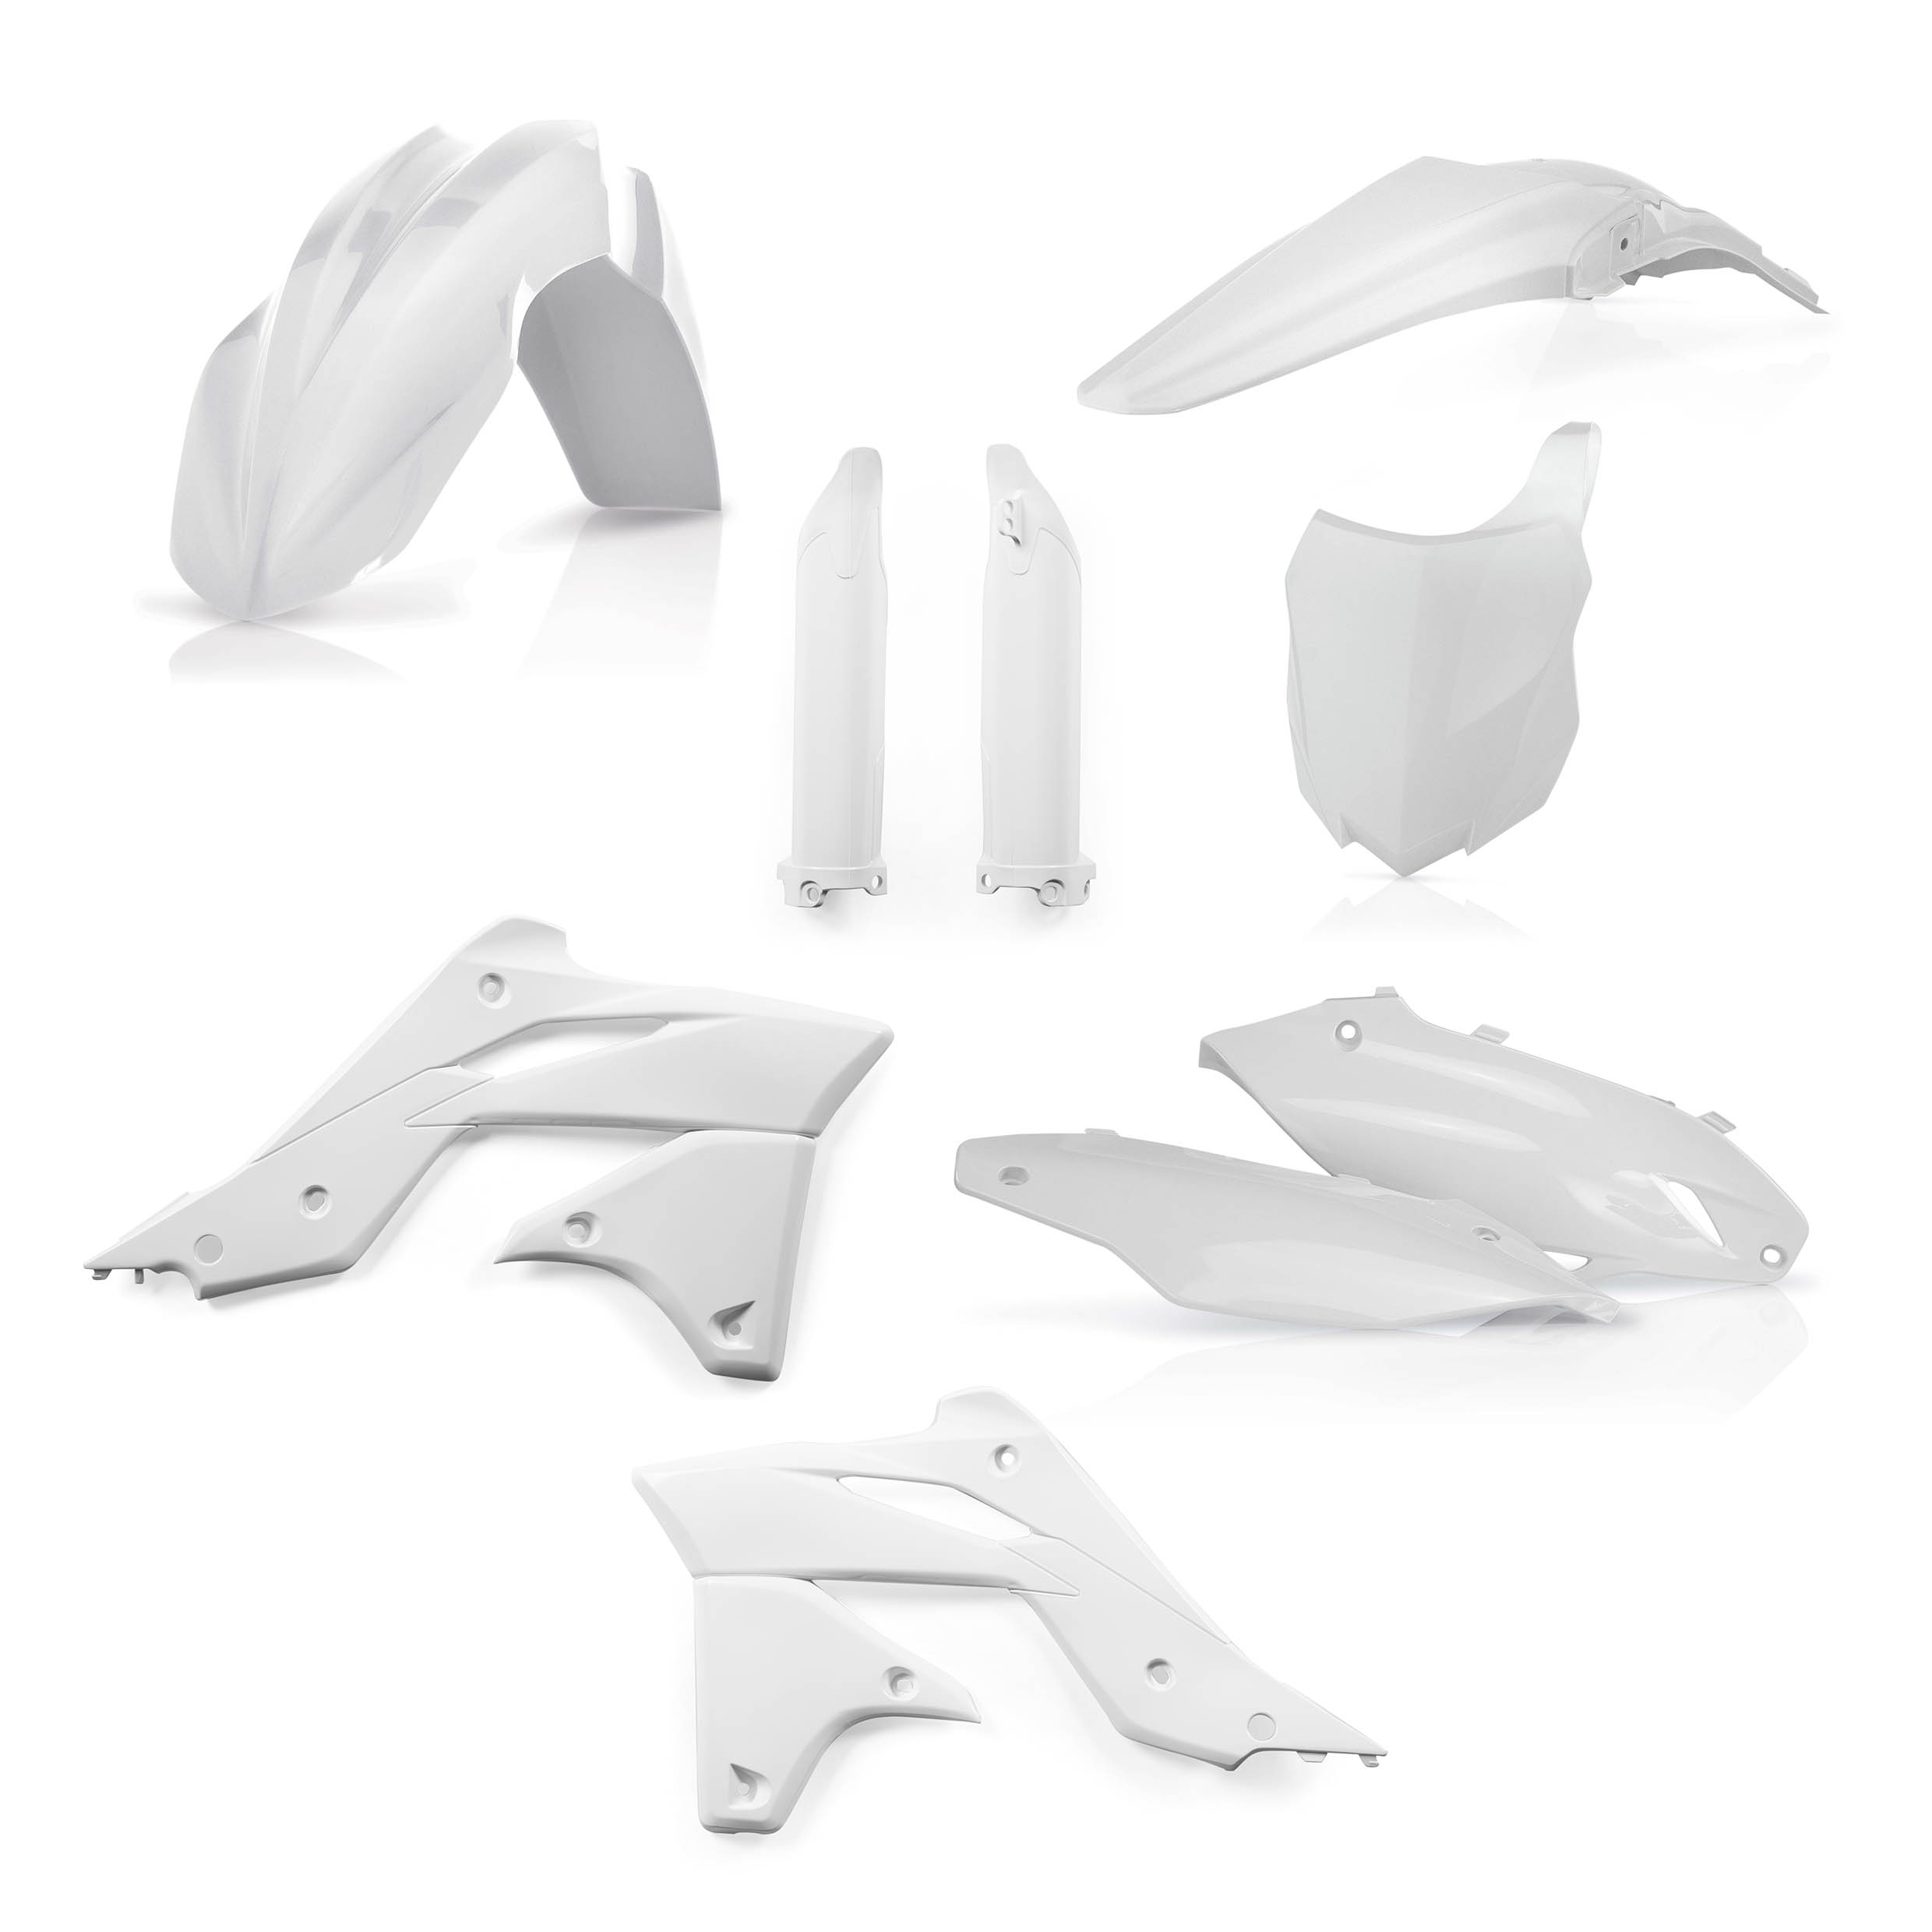 Plastikteile für deine Kawasaki KX 250 in weiß bestehend aus Kotflügel vorn Kotflügel hinten Kühlerspoiler Seitenteile Gabelschützer Startnummerntafel